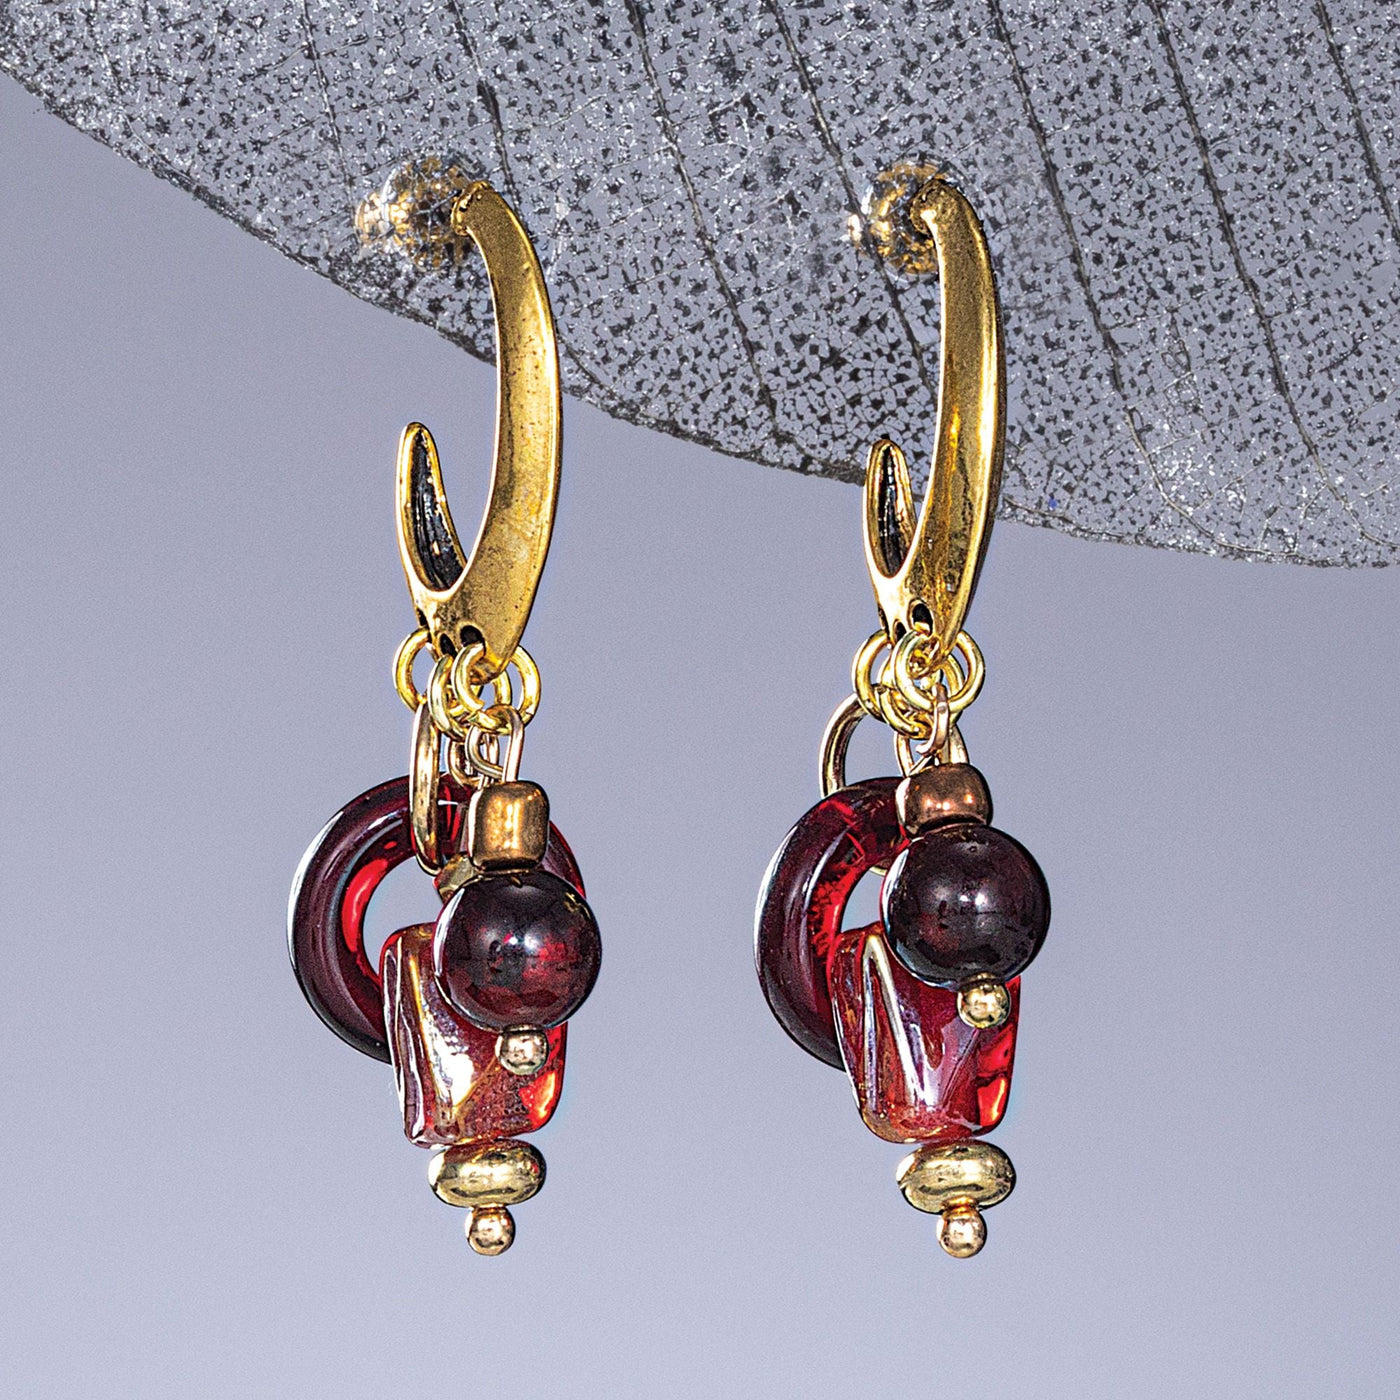 The Vineyard Cluster Earrings